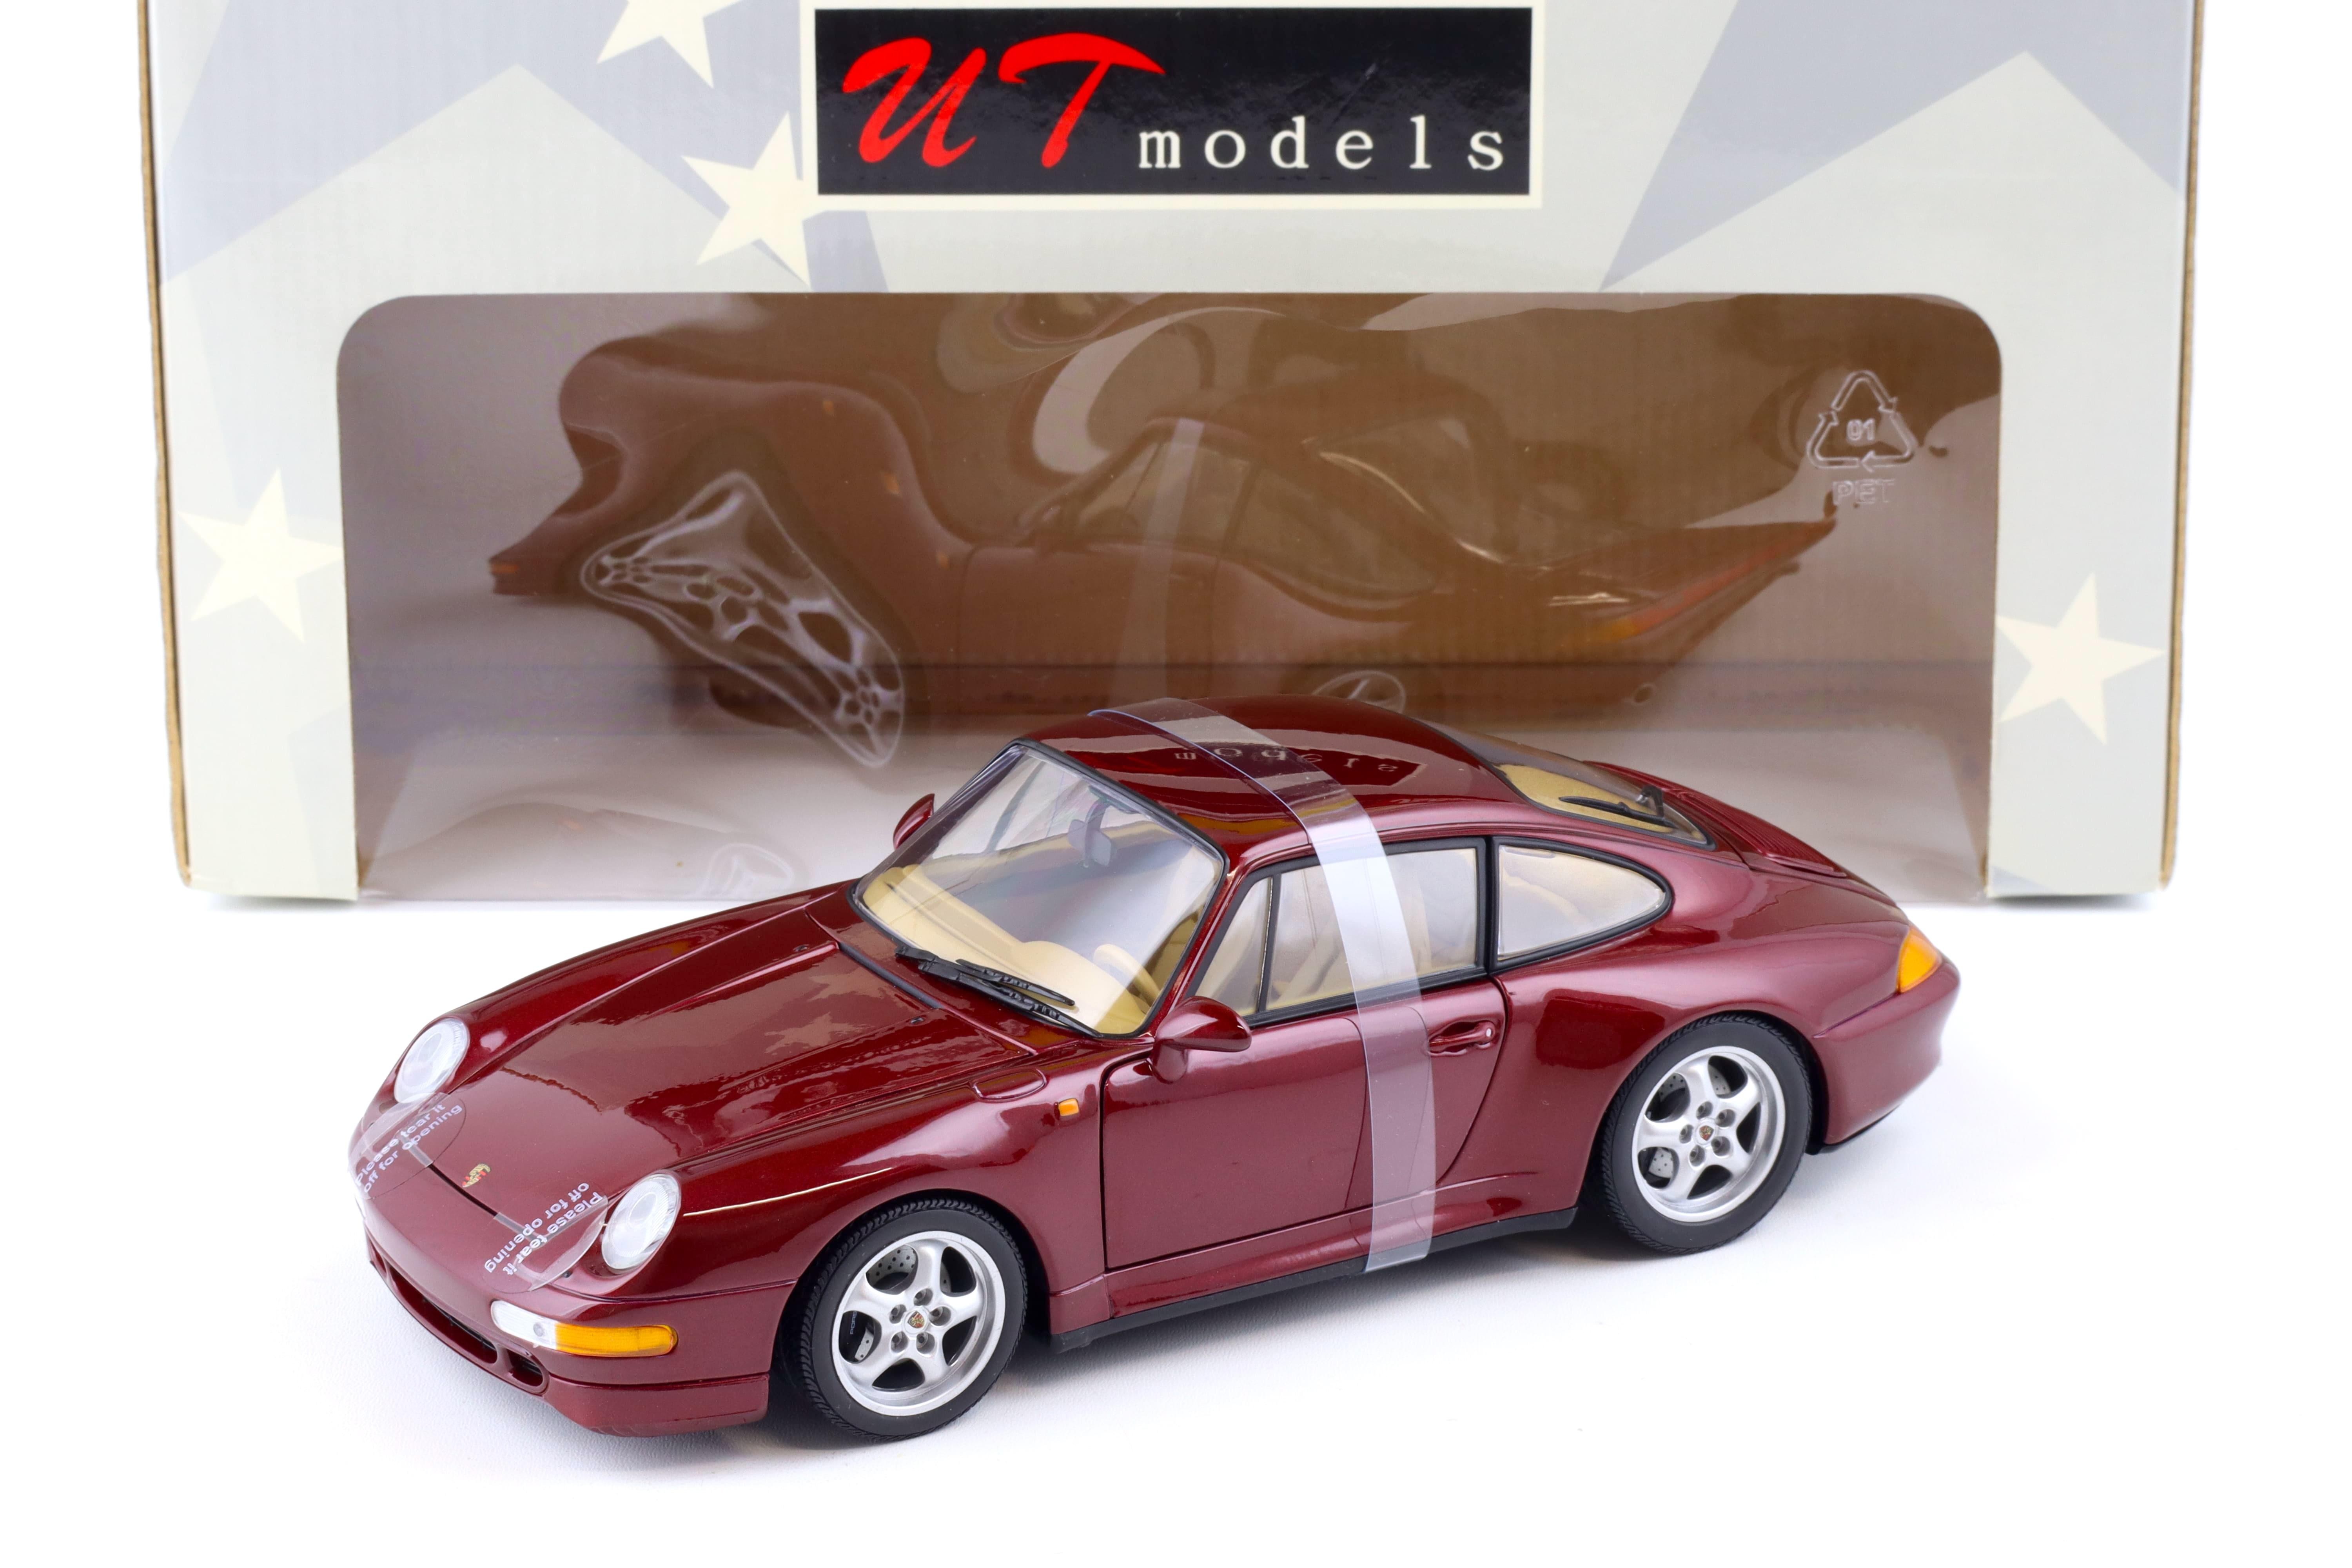 1:18 UT Models Porsche 911 (993) Carrera S Coupe metallic red 27827